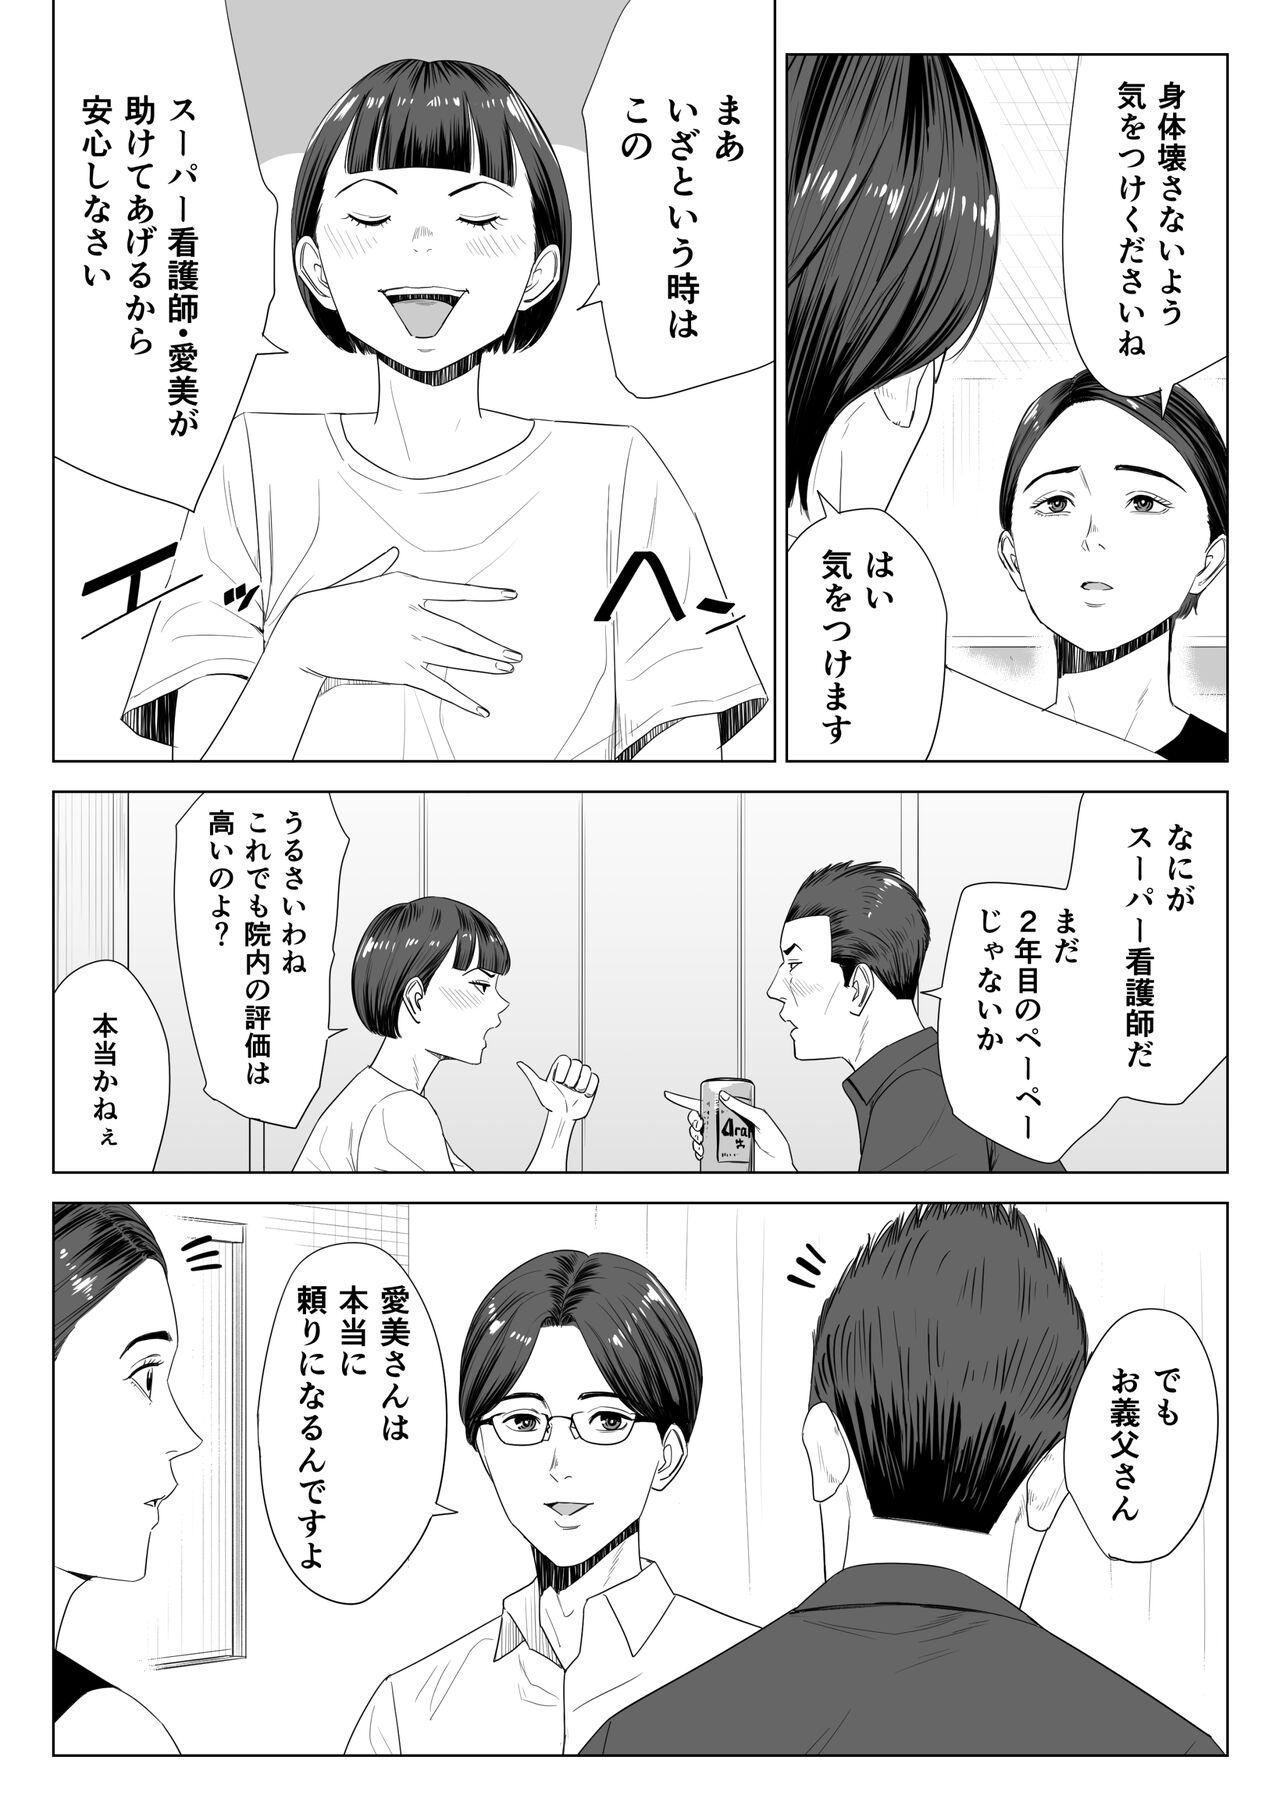 Friend Gibo no tsukaeru karada. - Original Fitness - Page 5